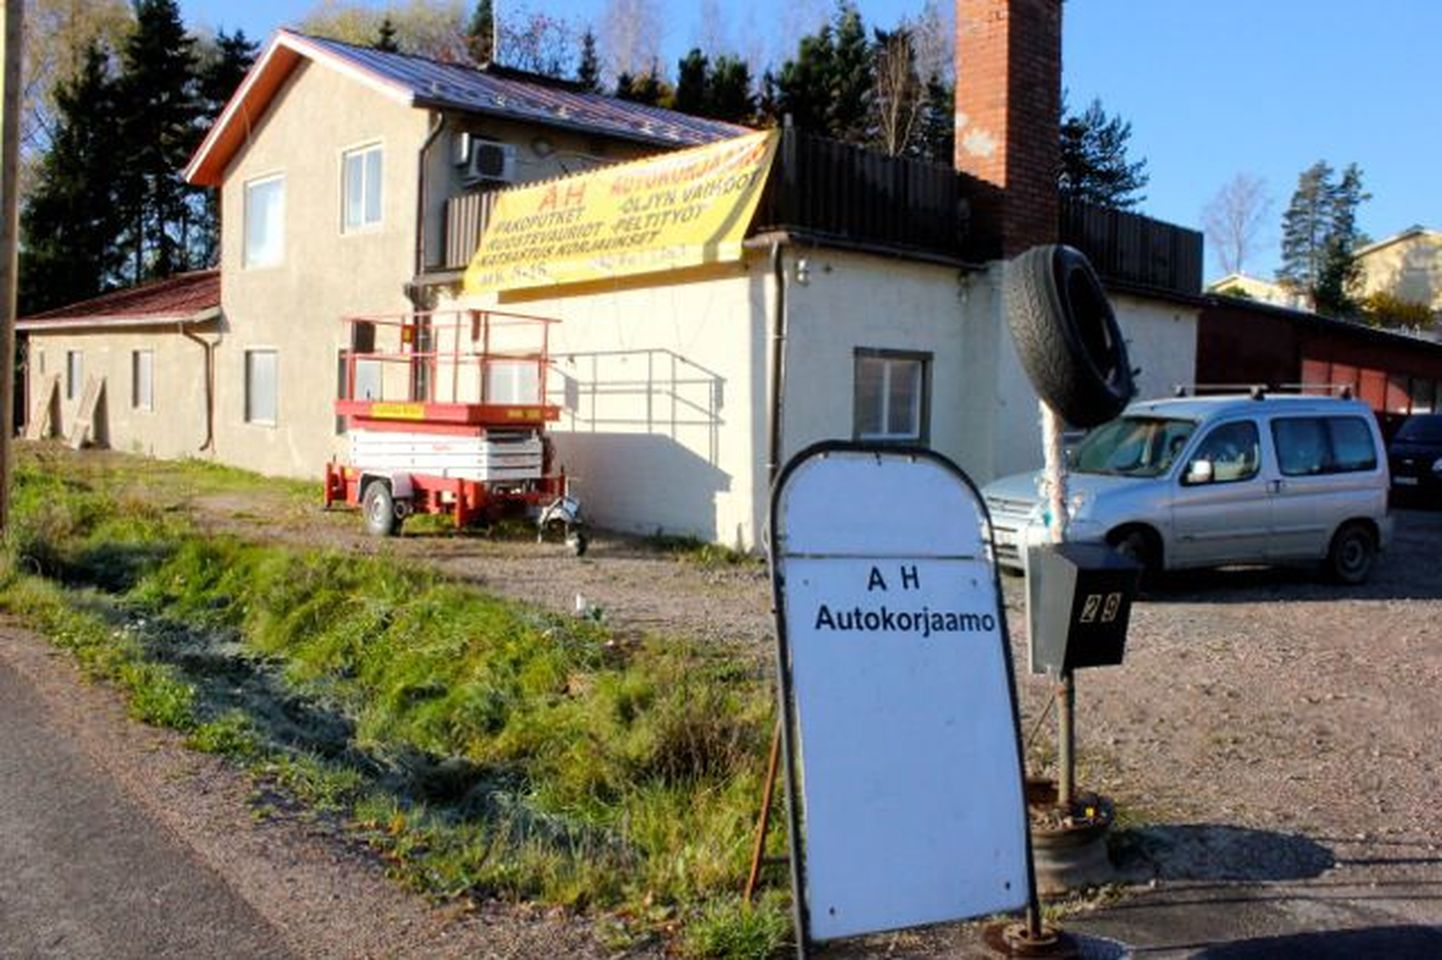 Politsei leidis kahe imiku surnukehad oktoobri alguses Helsingi lähedal Nurmijärve vallas Klaukkalas. Ühe surnukeha leidsid korrakaitsjad eramajast prügi alt ja teise maja lähedalt tühermaalt.